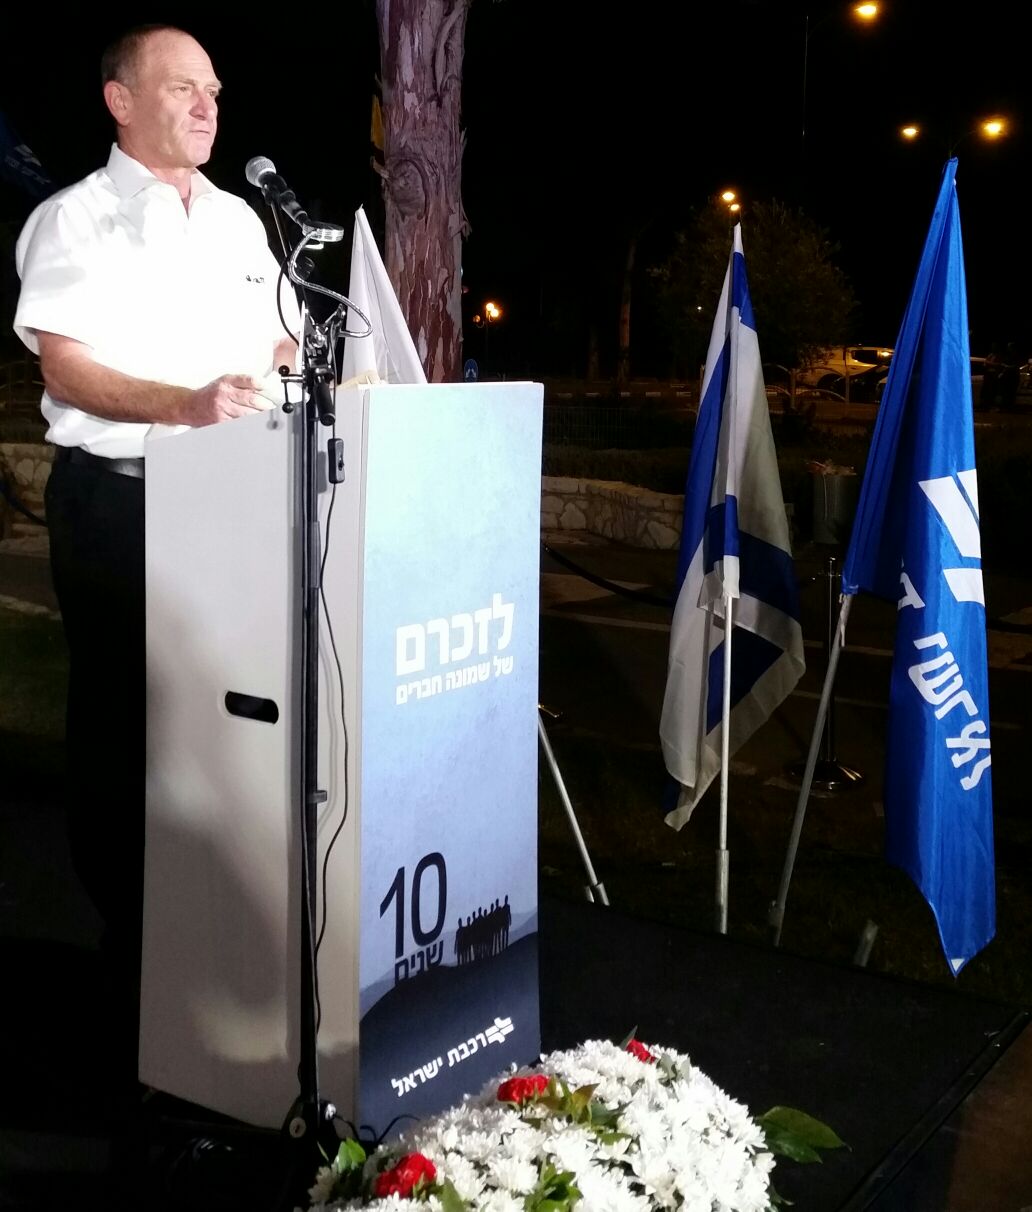 עז צפריר, מנכ"ל רכבת ישראל, בטקס הזיכרון לזכר שמונה החברים. צילום: דוברות רכבת ישראל.